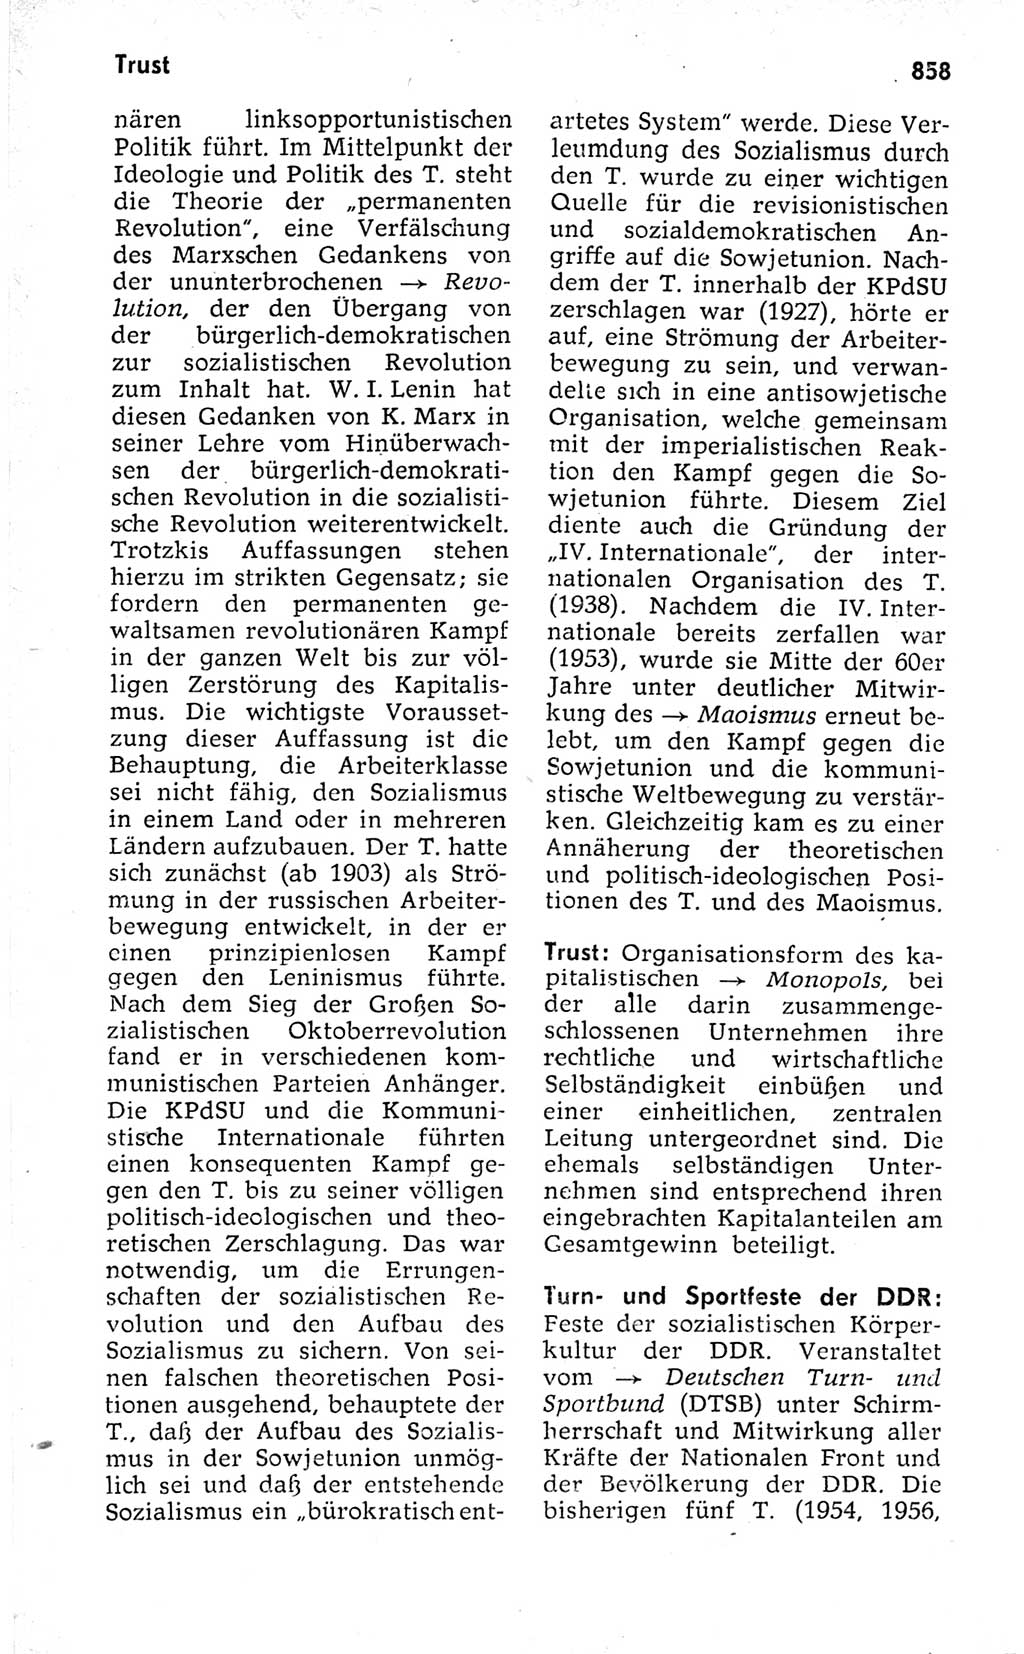 Kleines politisches Wörterbuch [Deutsche Demokratische Republik (DDR)] 1973, Seite 858 (Kl. pol. Wb. DDR 1973, S. 858)